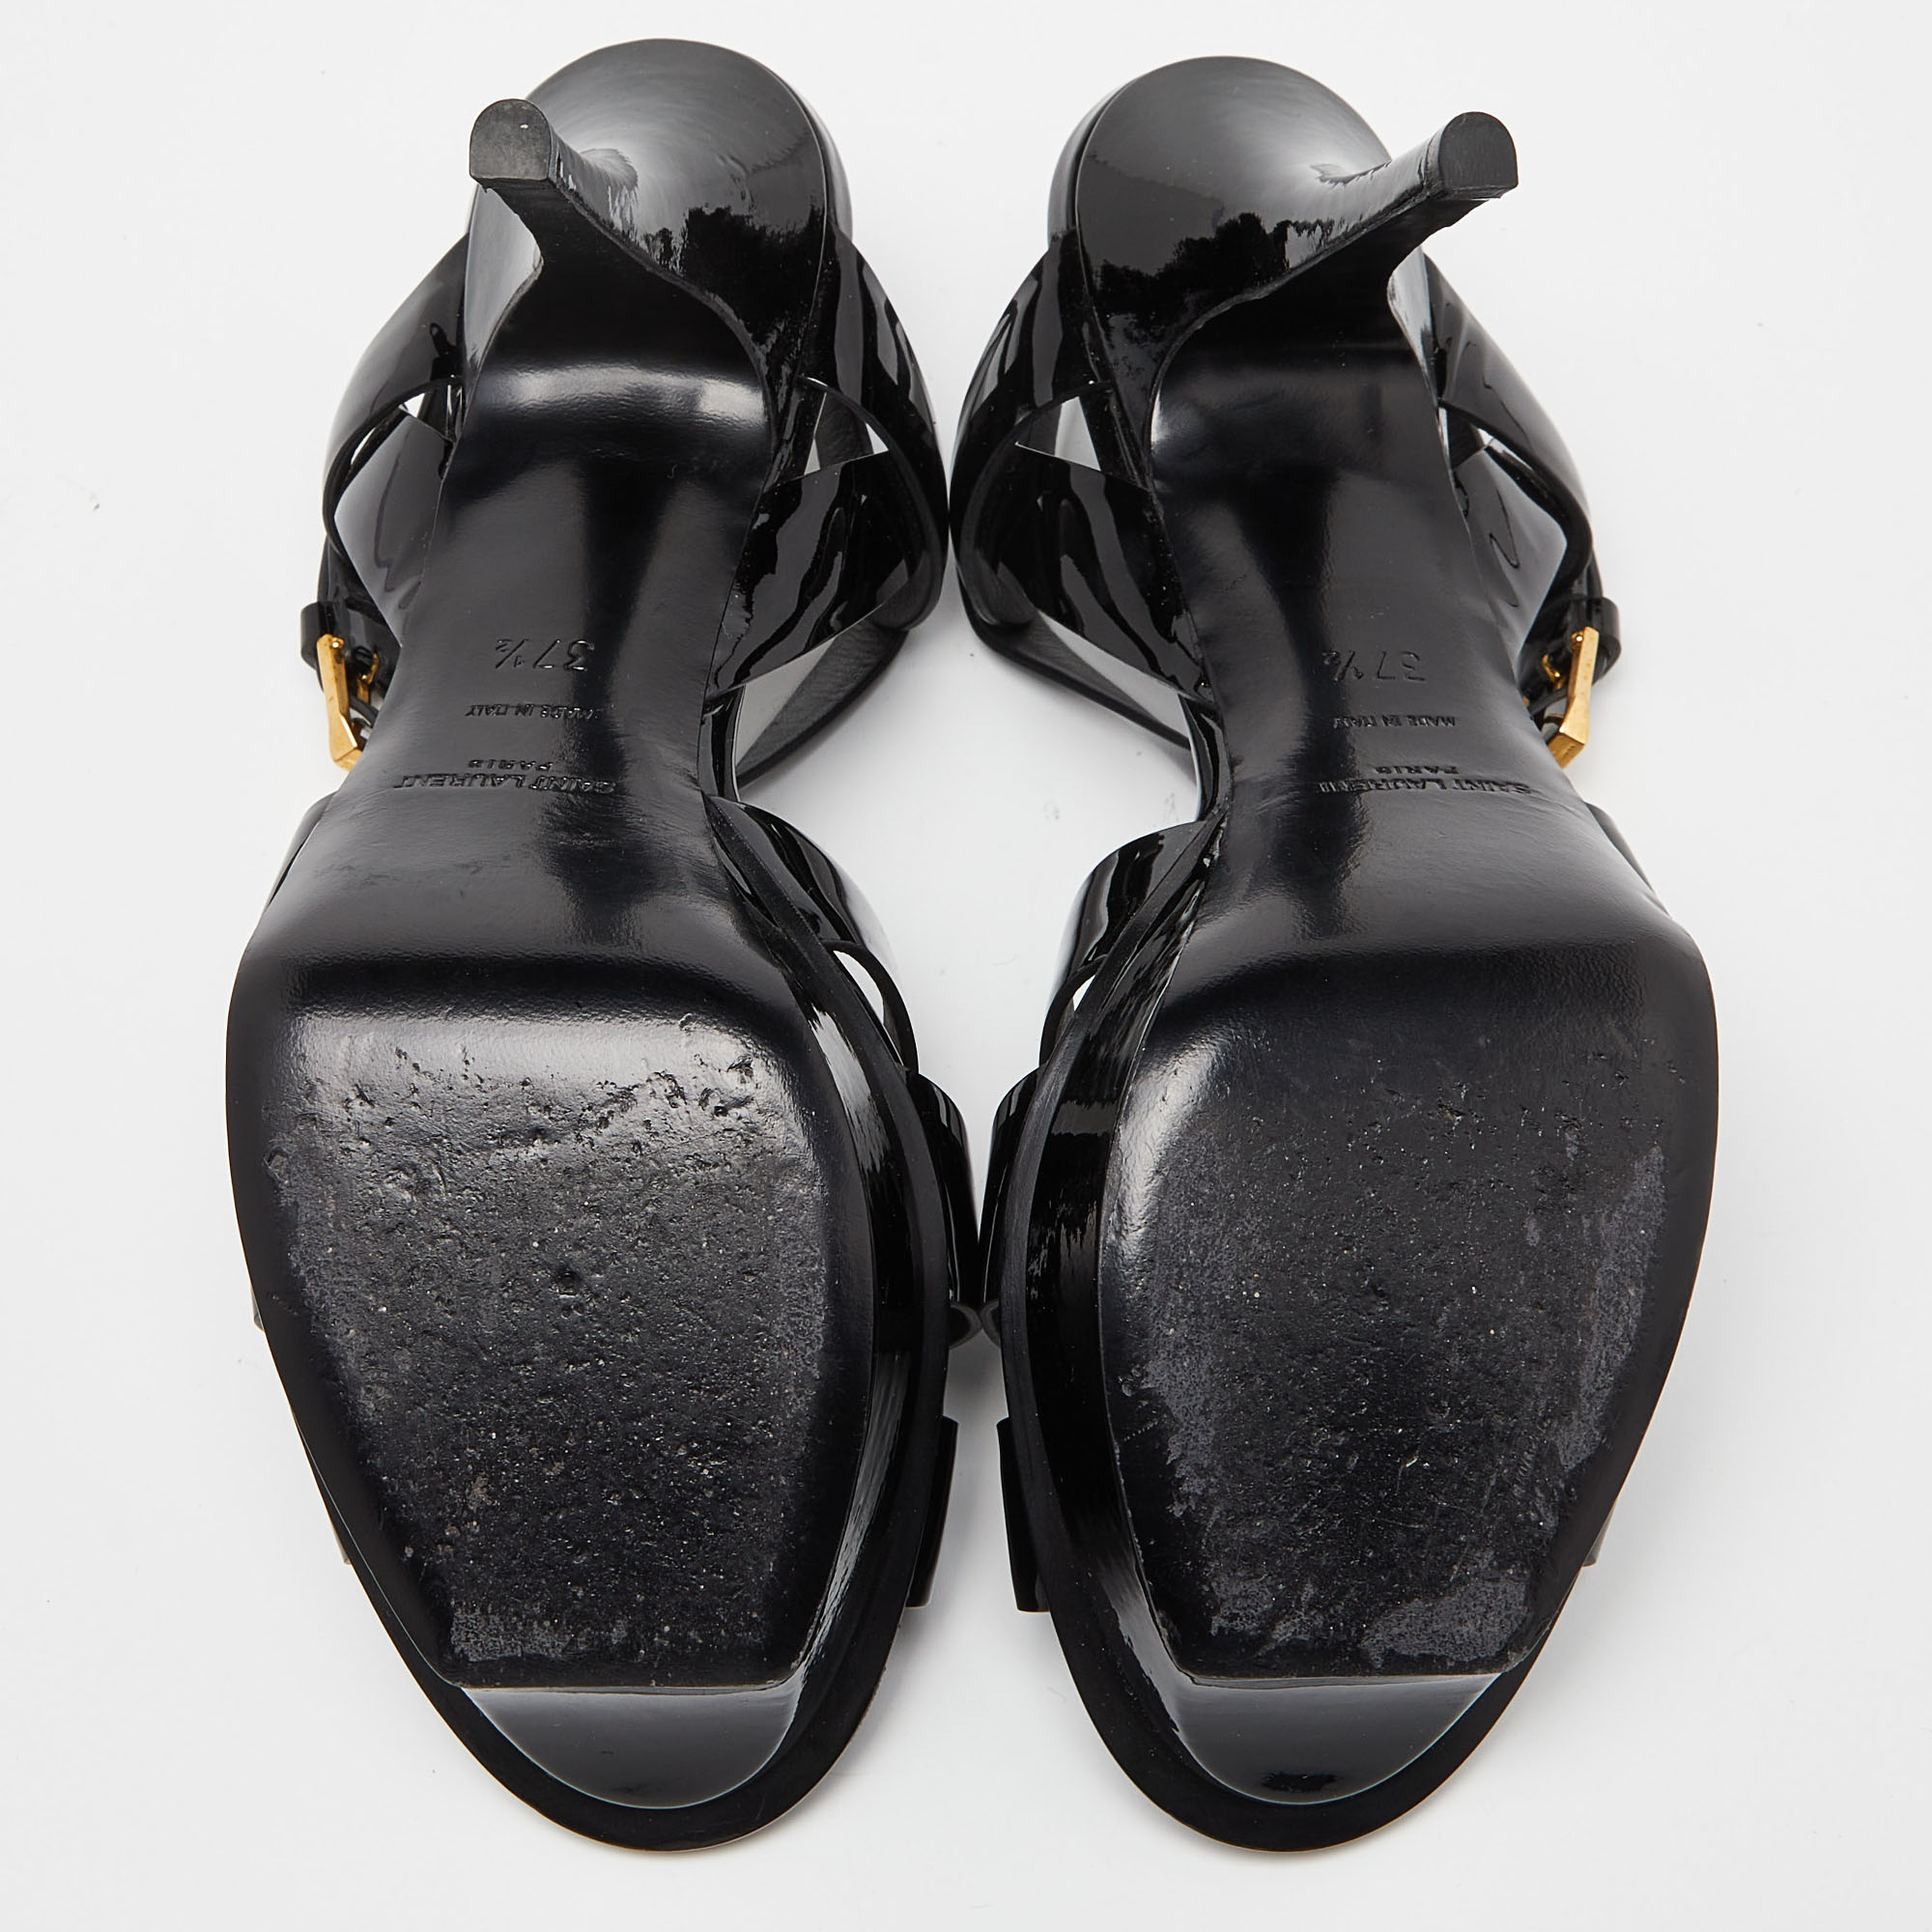 Saint Laurent Black Patent Leather Tribute Ankle Strap Sandals Size 37.5